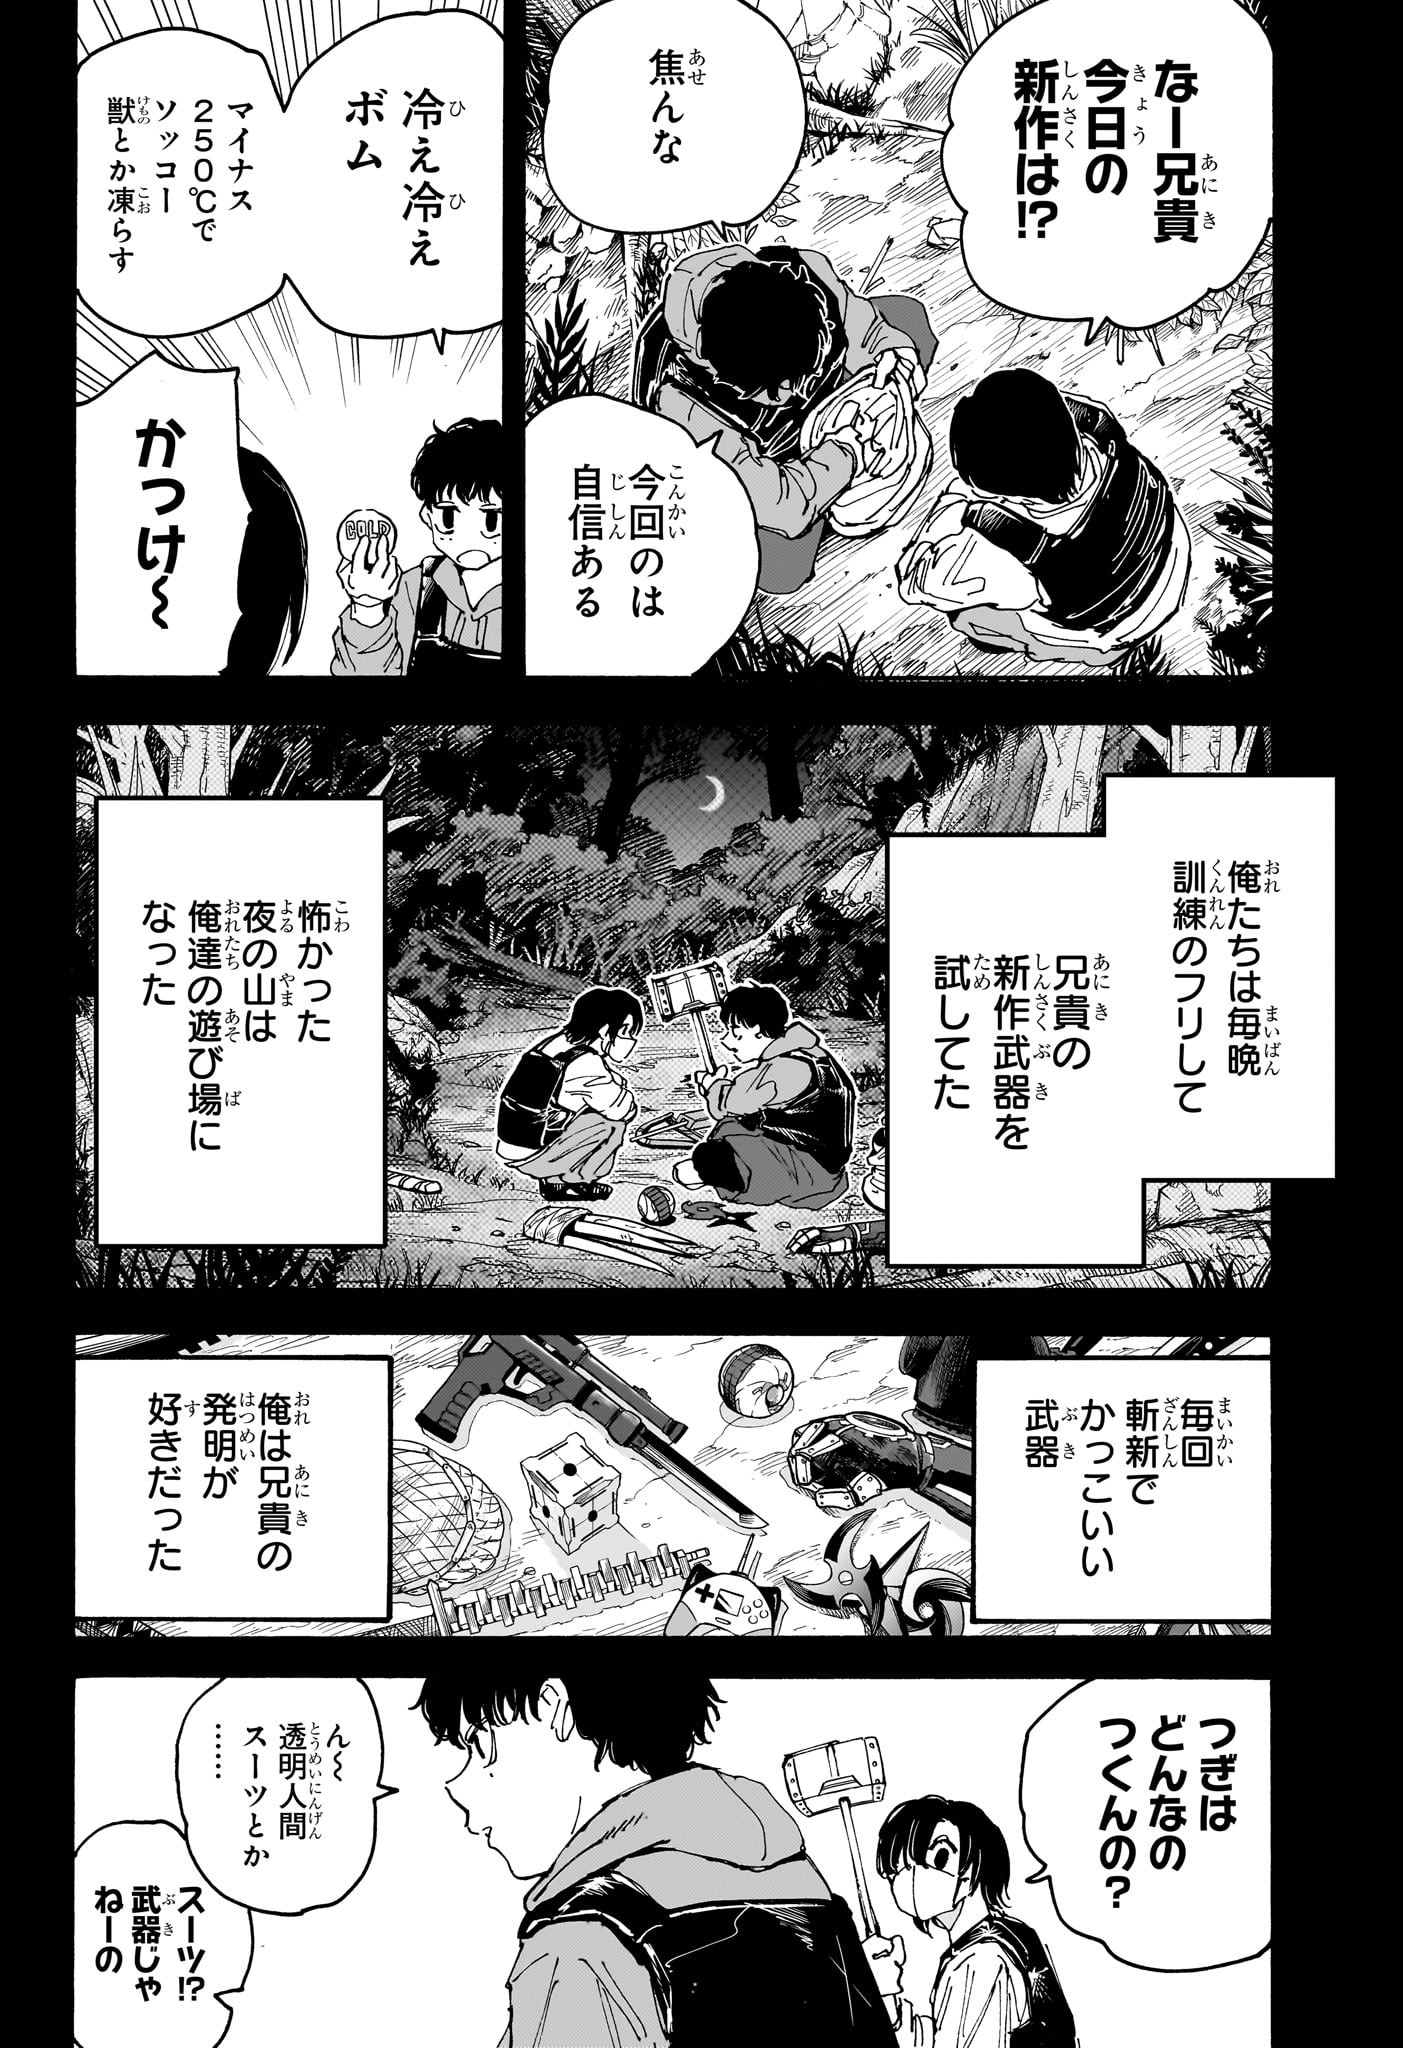 Sakamoto Days - Chapter 145 - Page 4